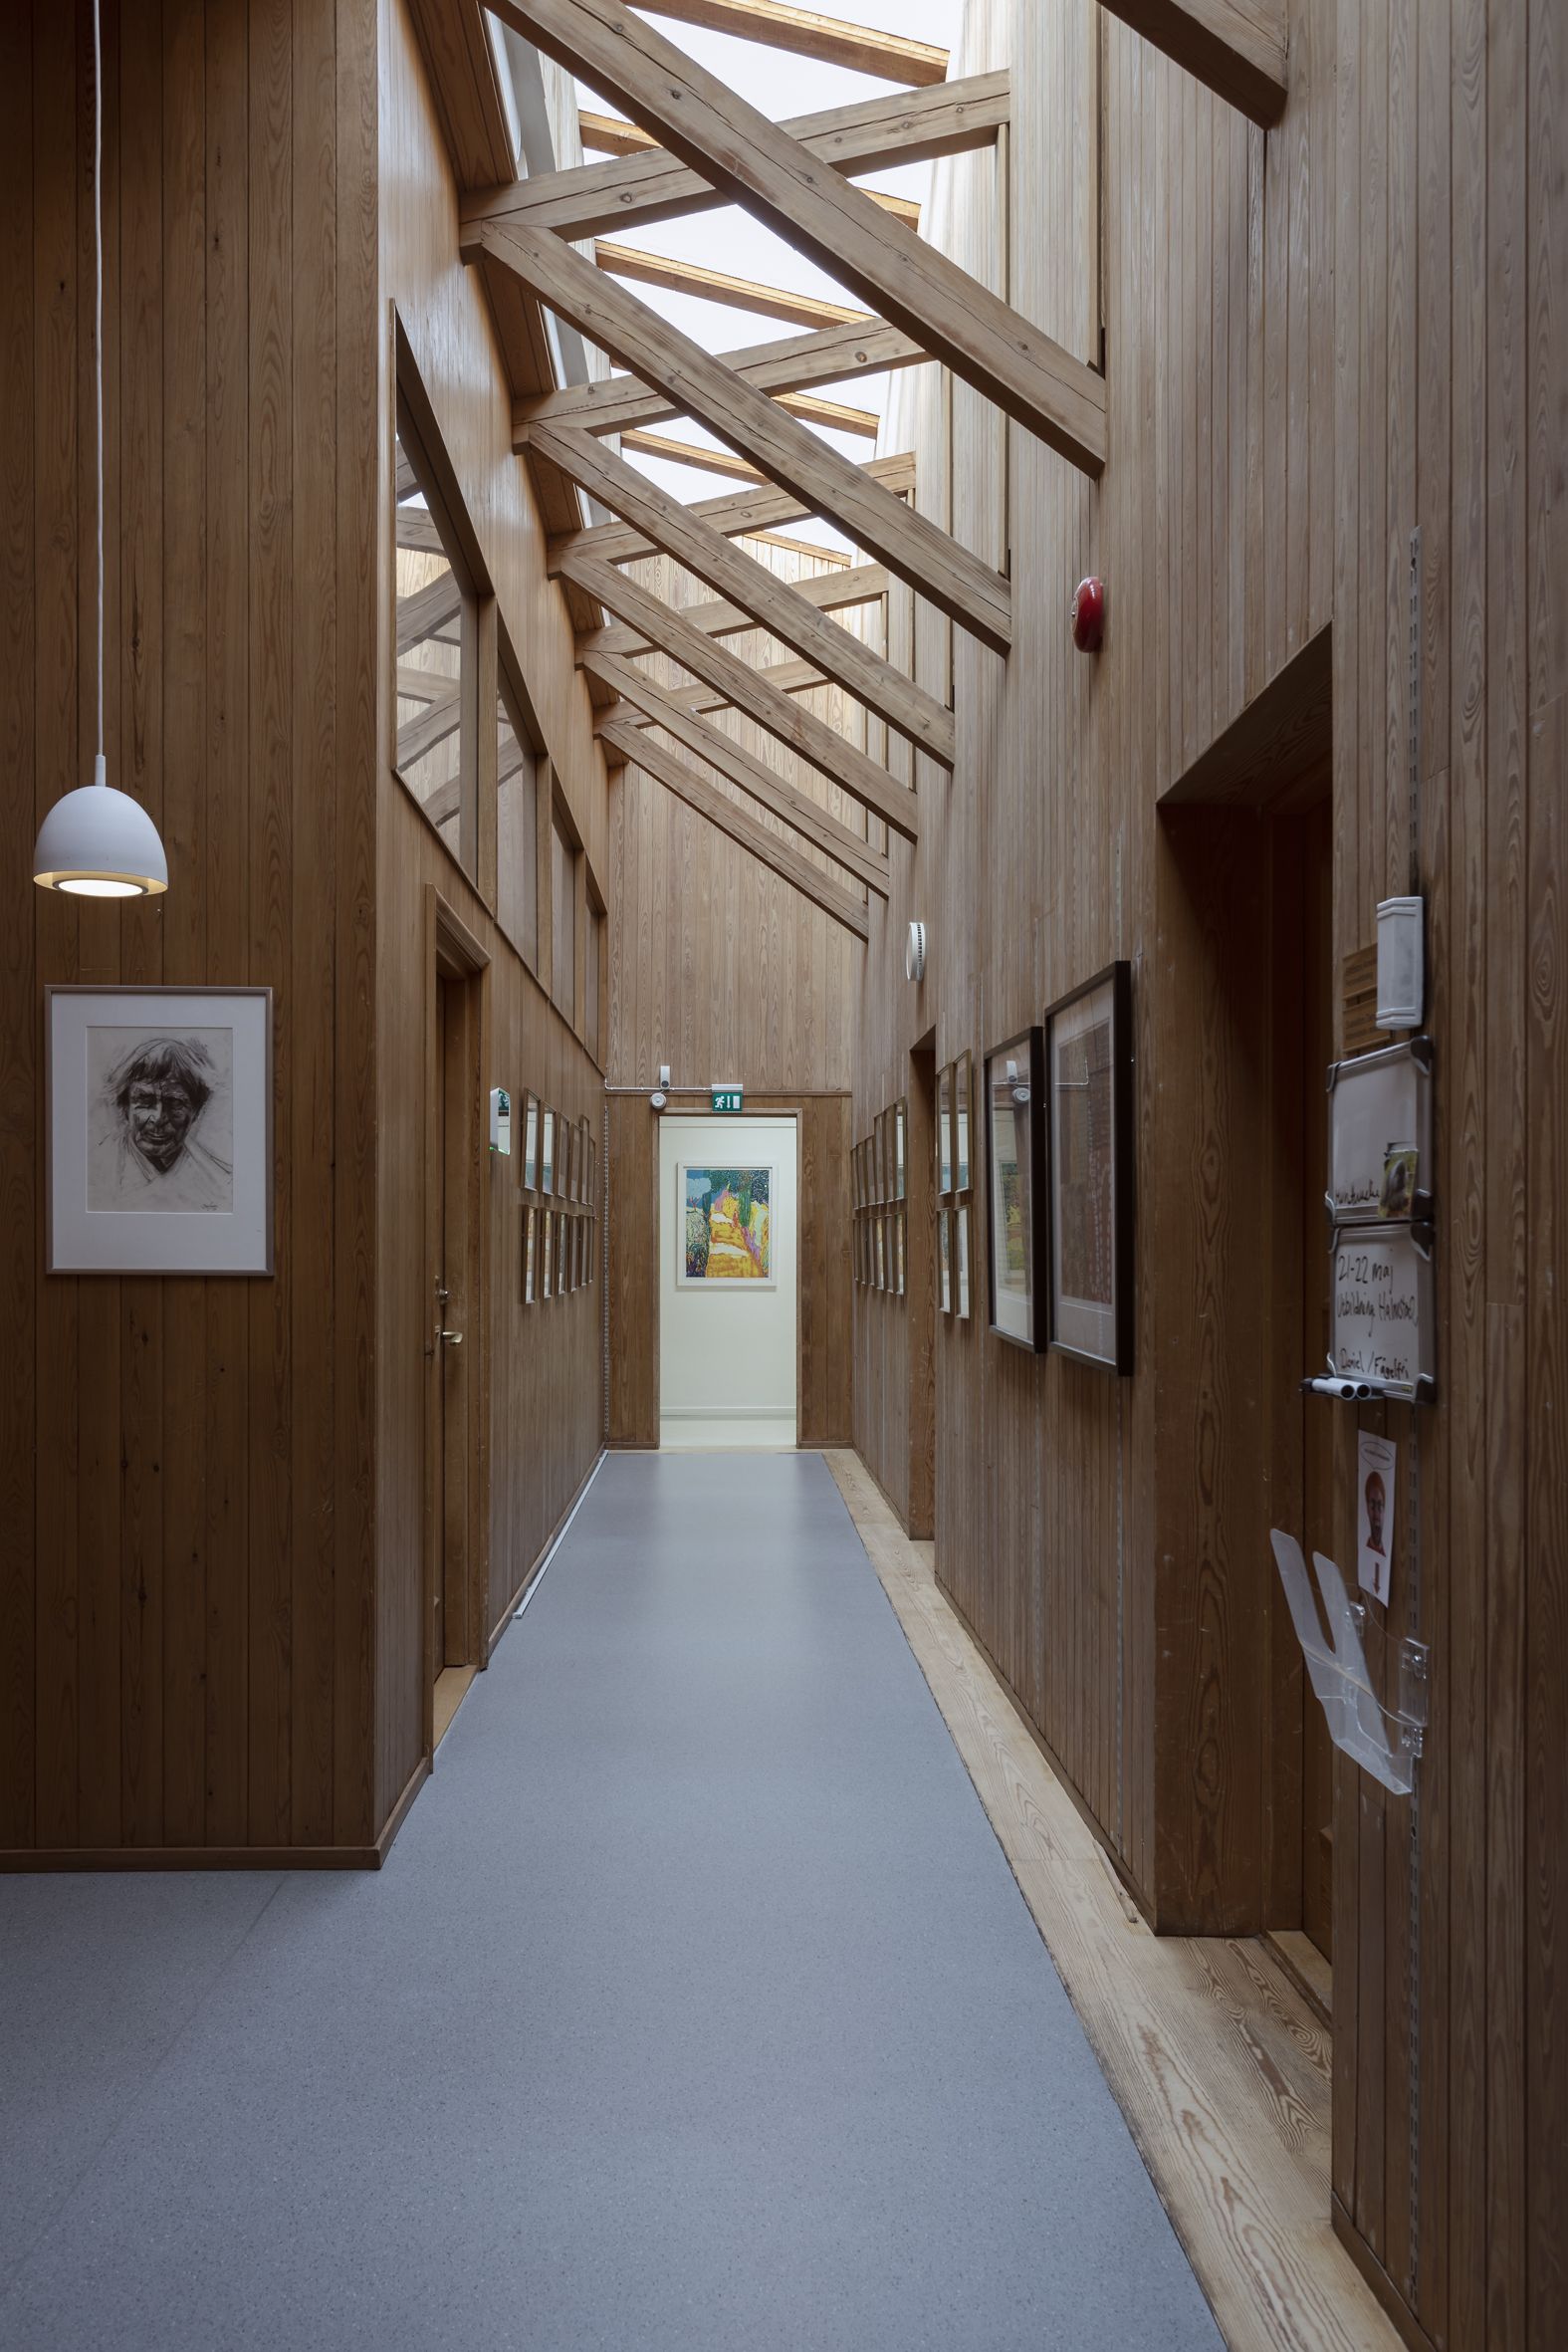 Interiörbild från en korridor med bjälkar och takfönster.